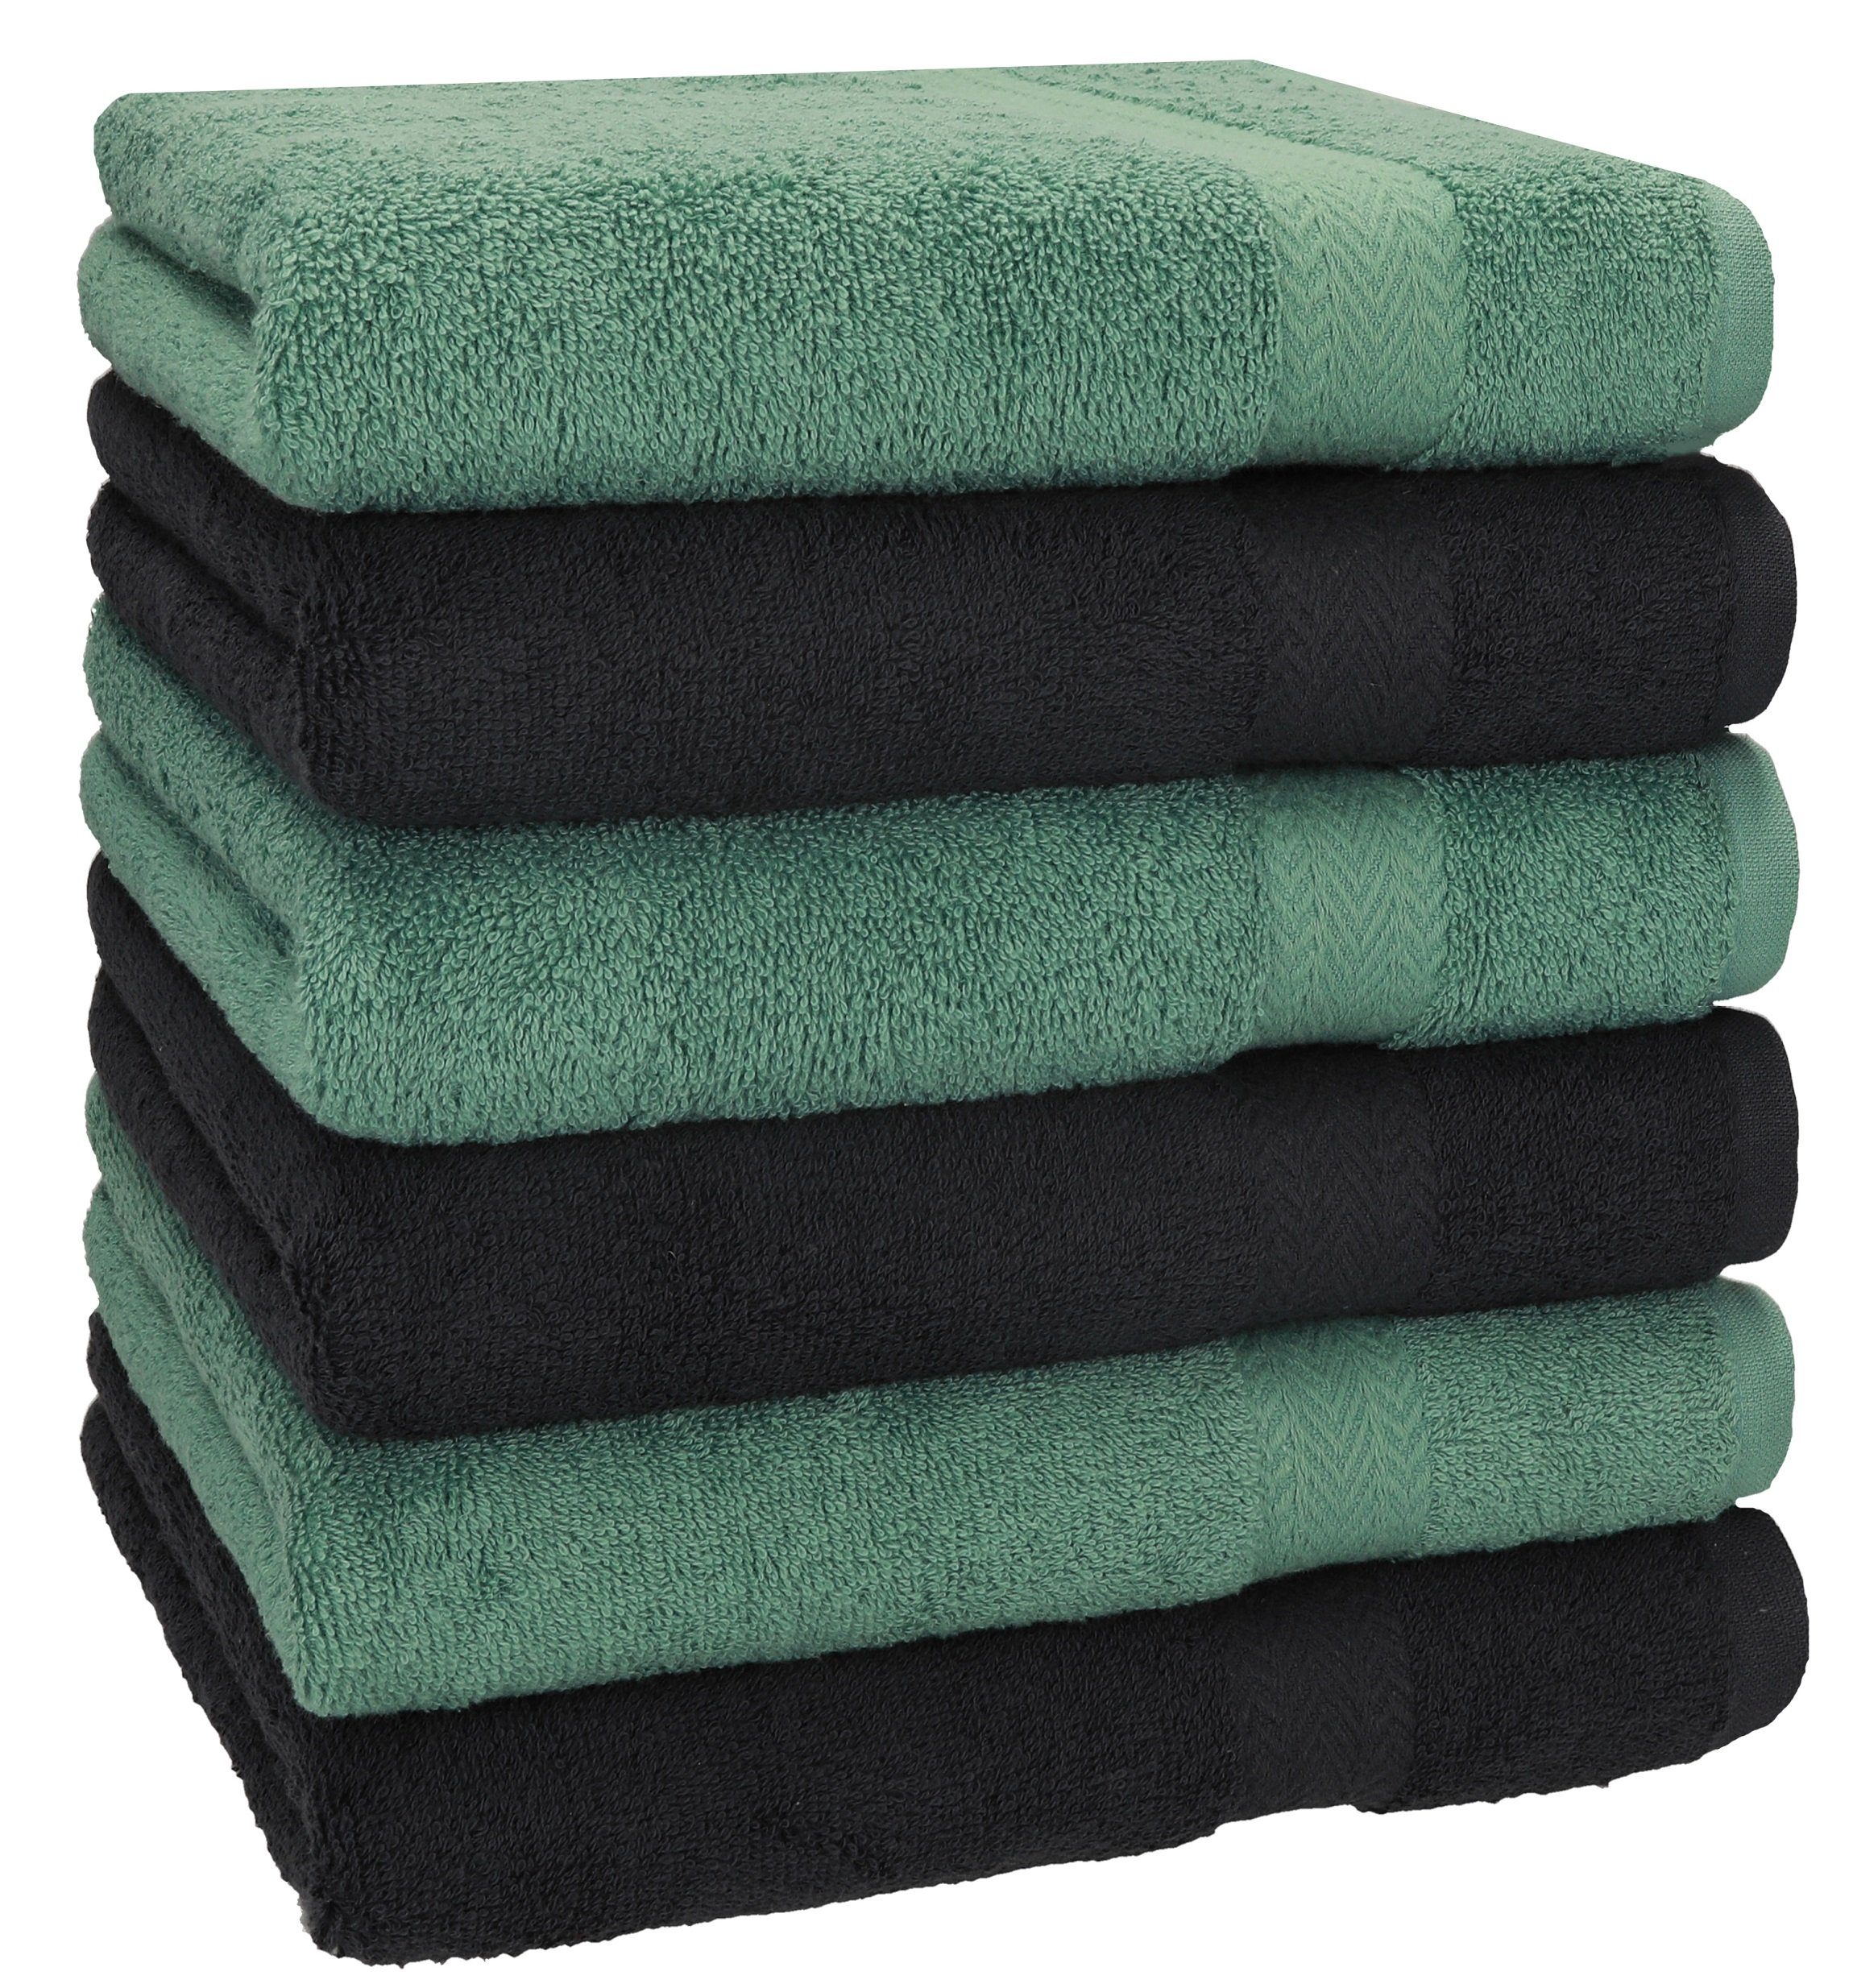 Betz Handtücher 6 Stück Handtücher Größe 50 x 100 cm Premium Handtuch Set 100% Baumwolle Farbe tannengrün/Graphit, 100% Baumwolle (6-St)